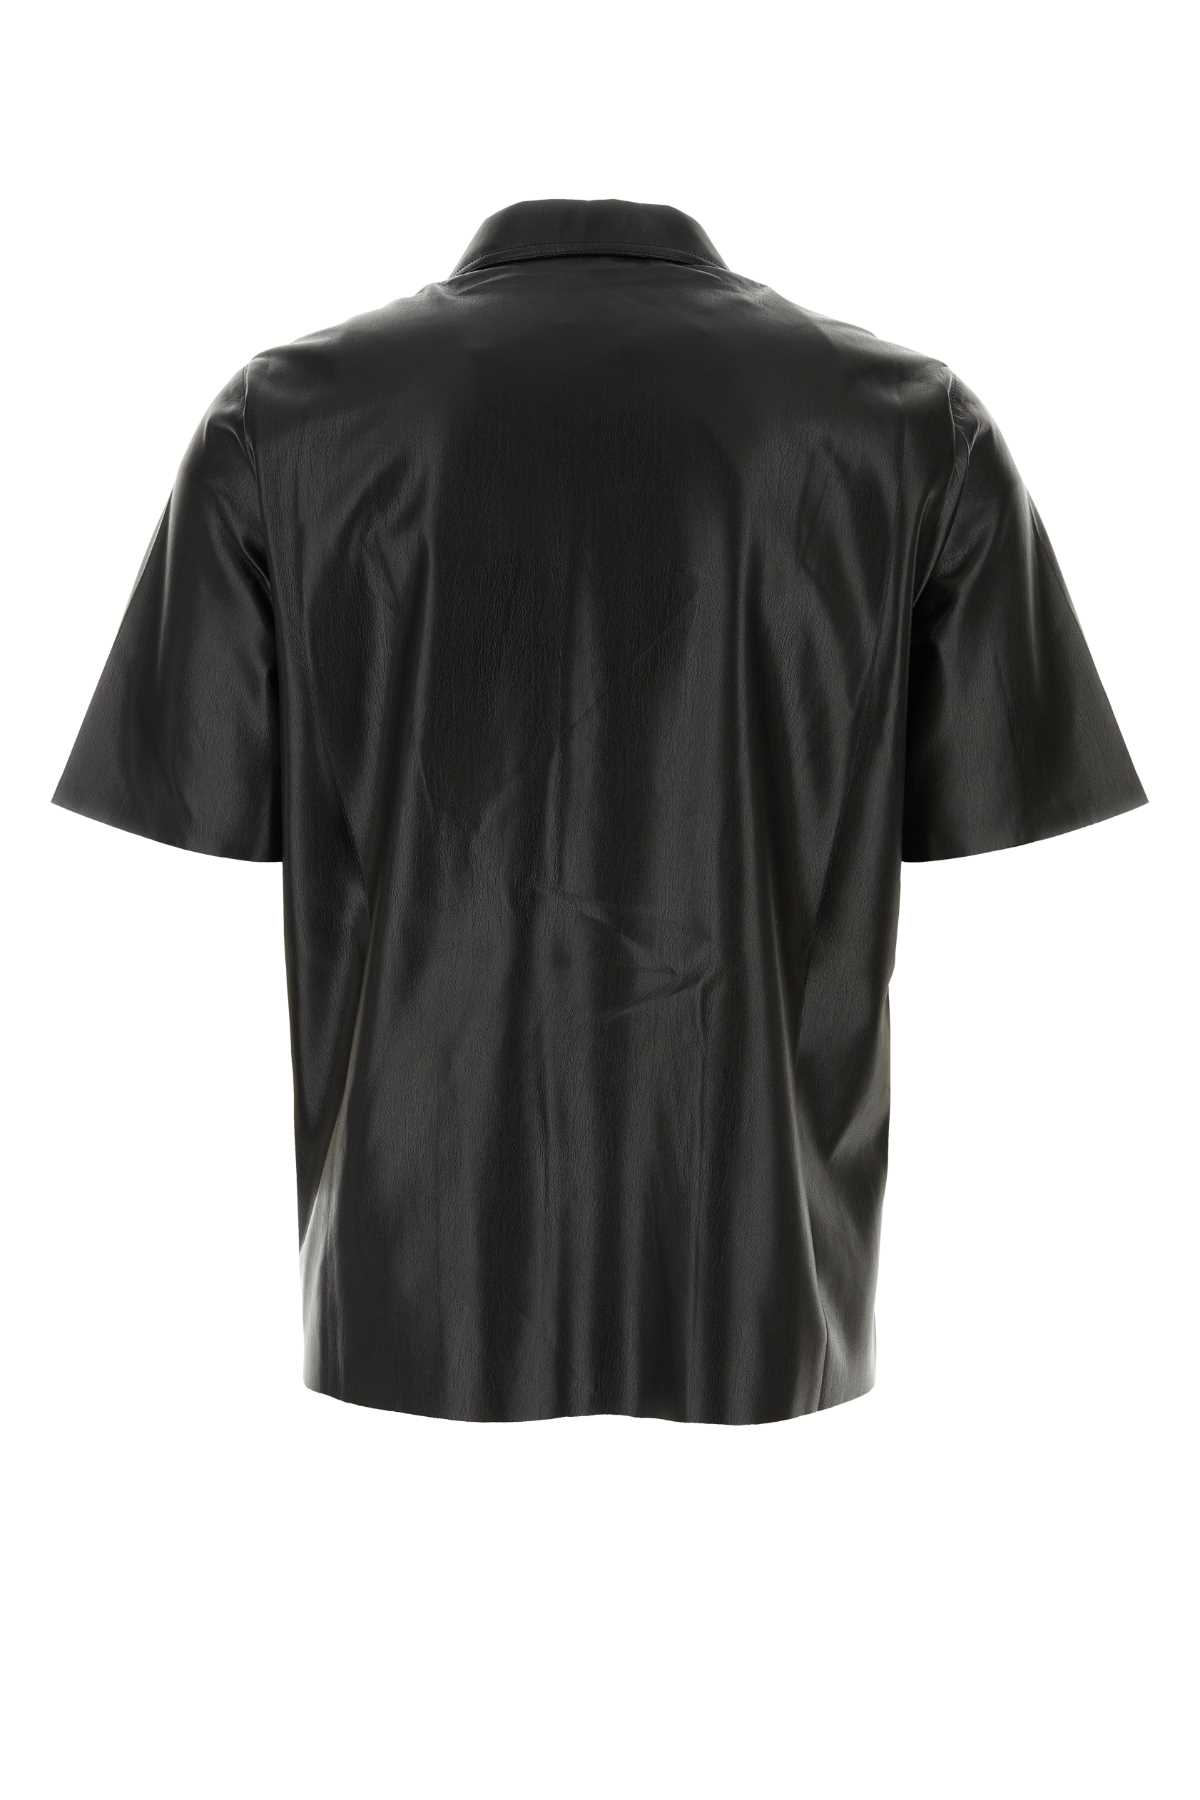 Shop Nanushka Black Synthetic Leather Bodil Shirt